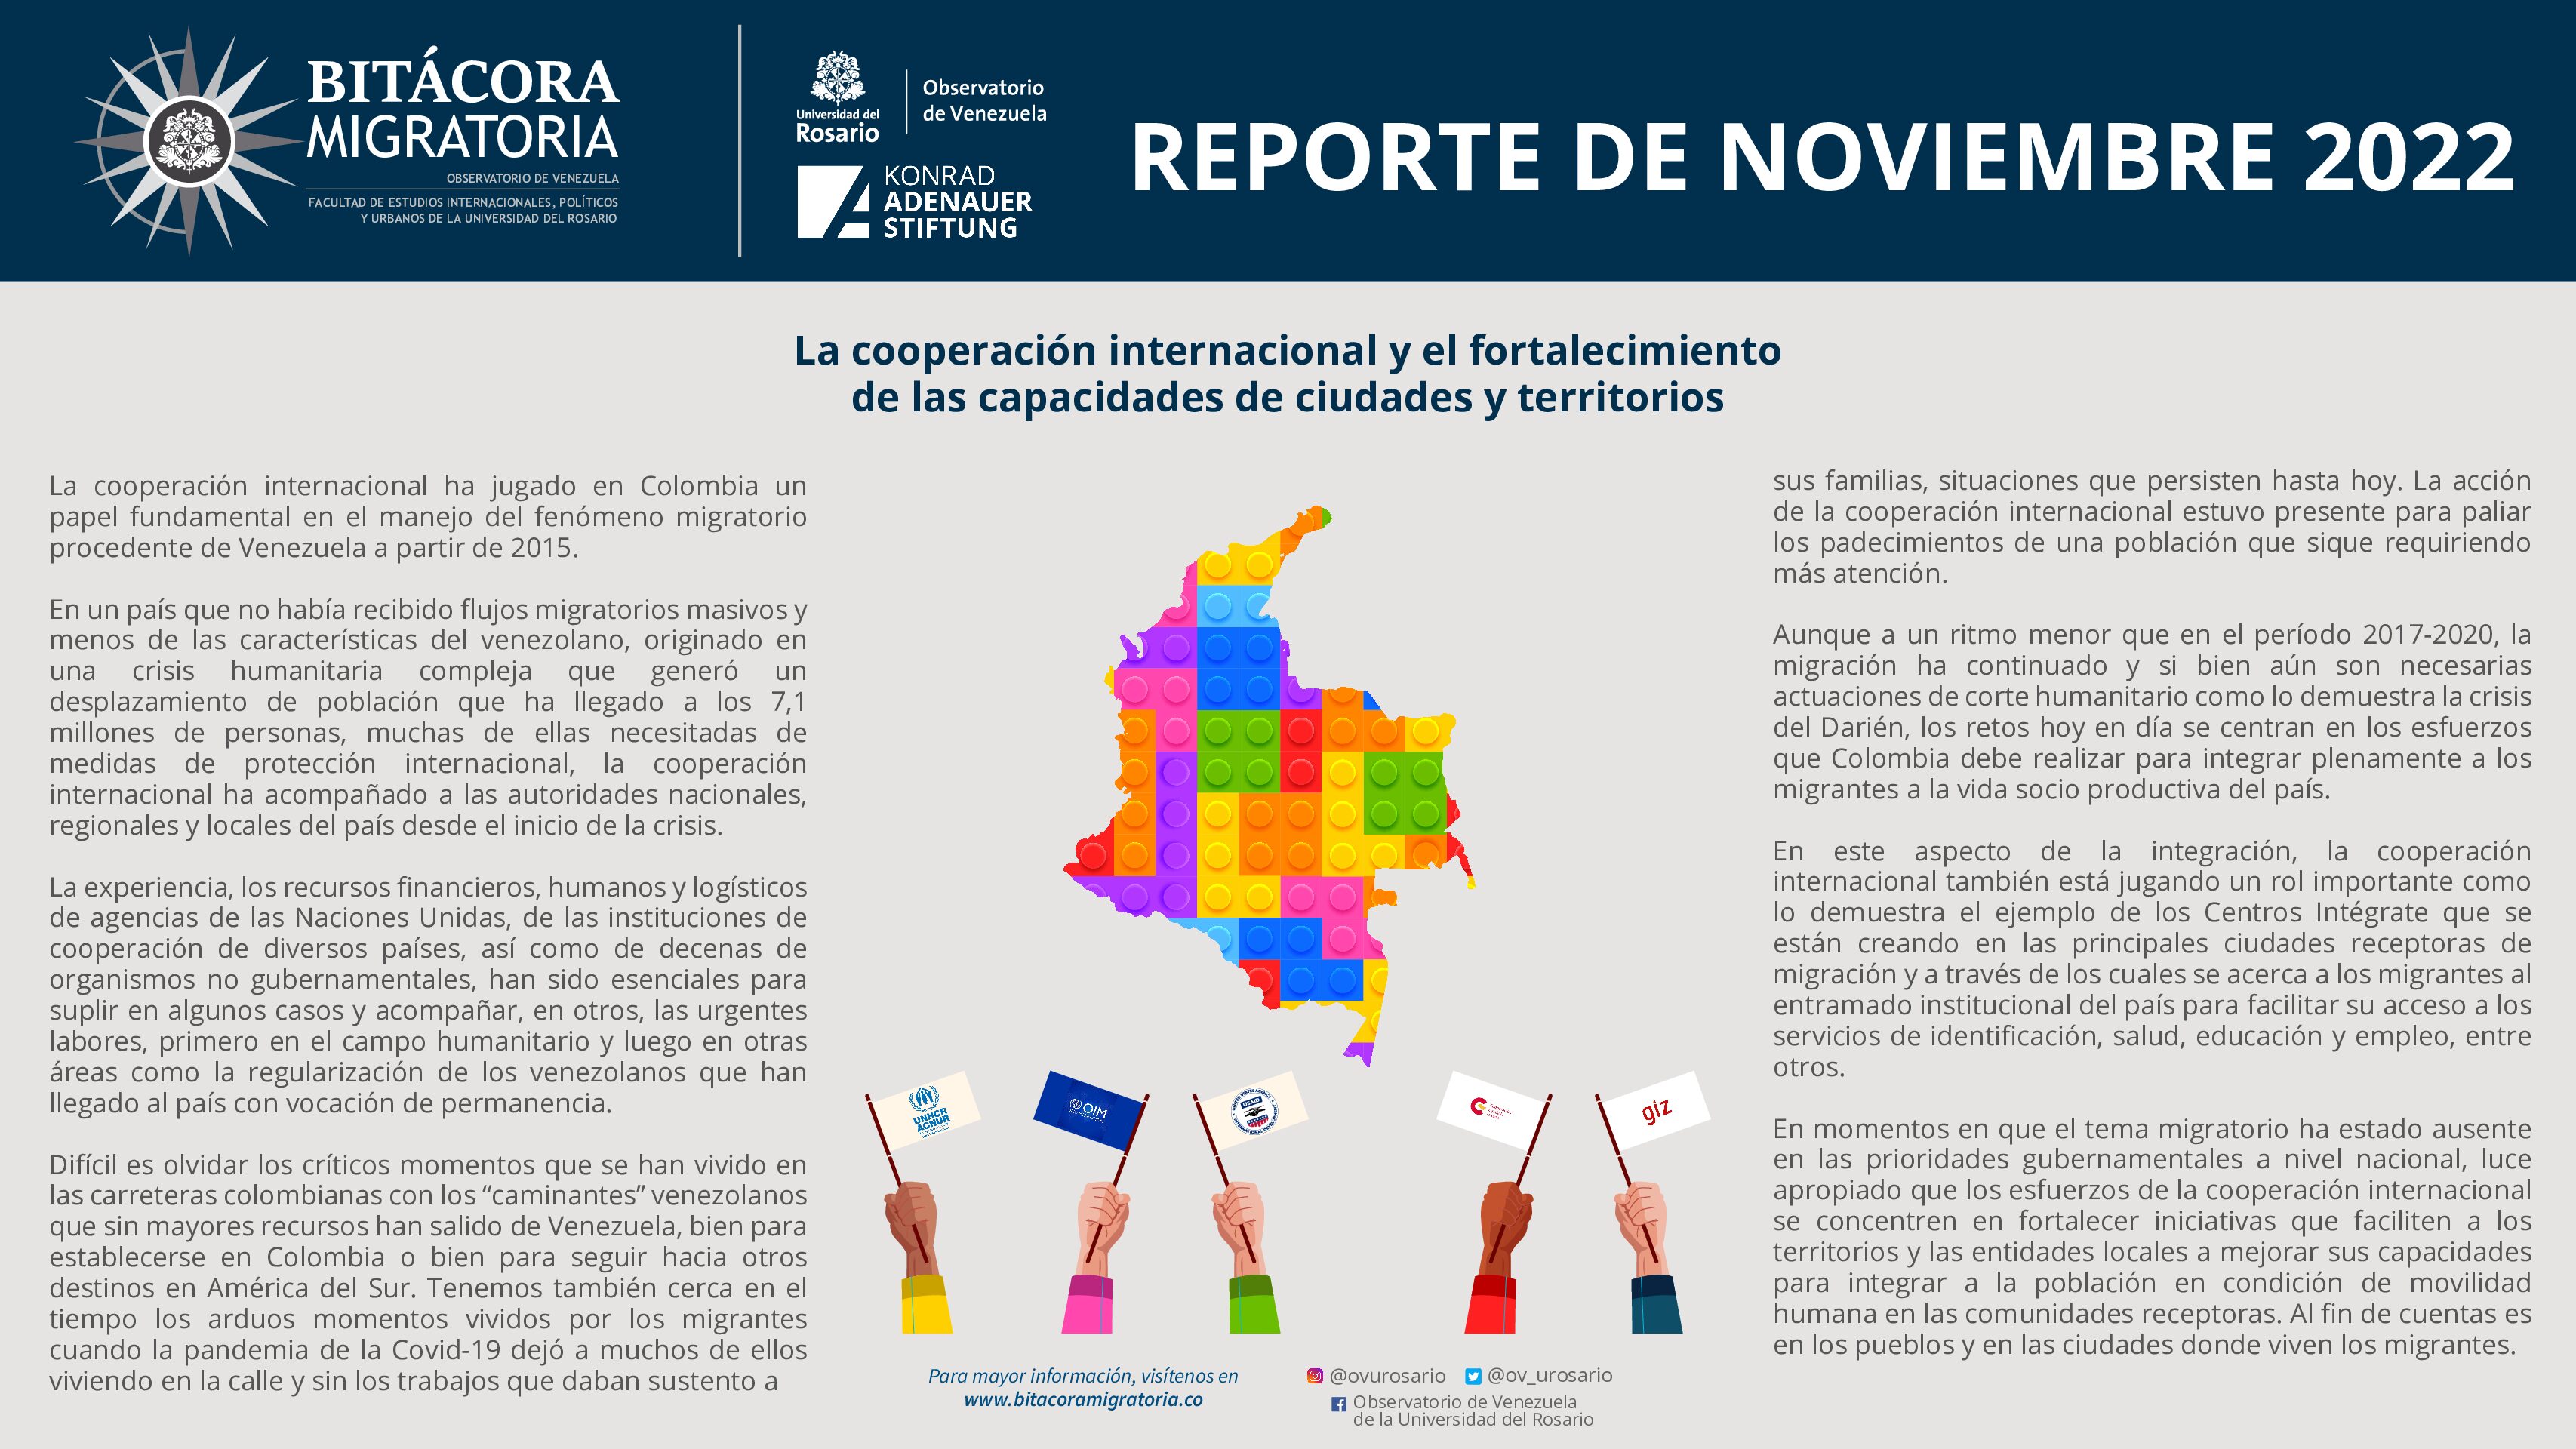 Reporte de Bitácora Migratoria / Noviembre 2022